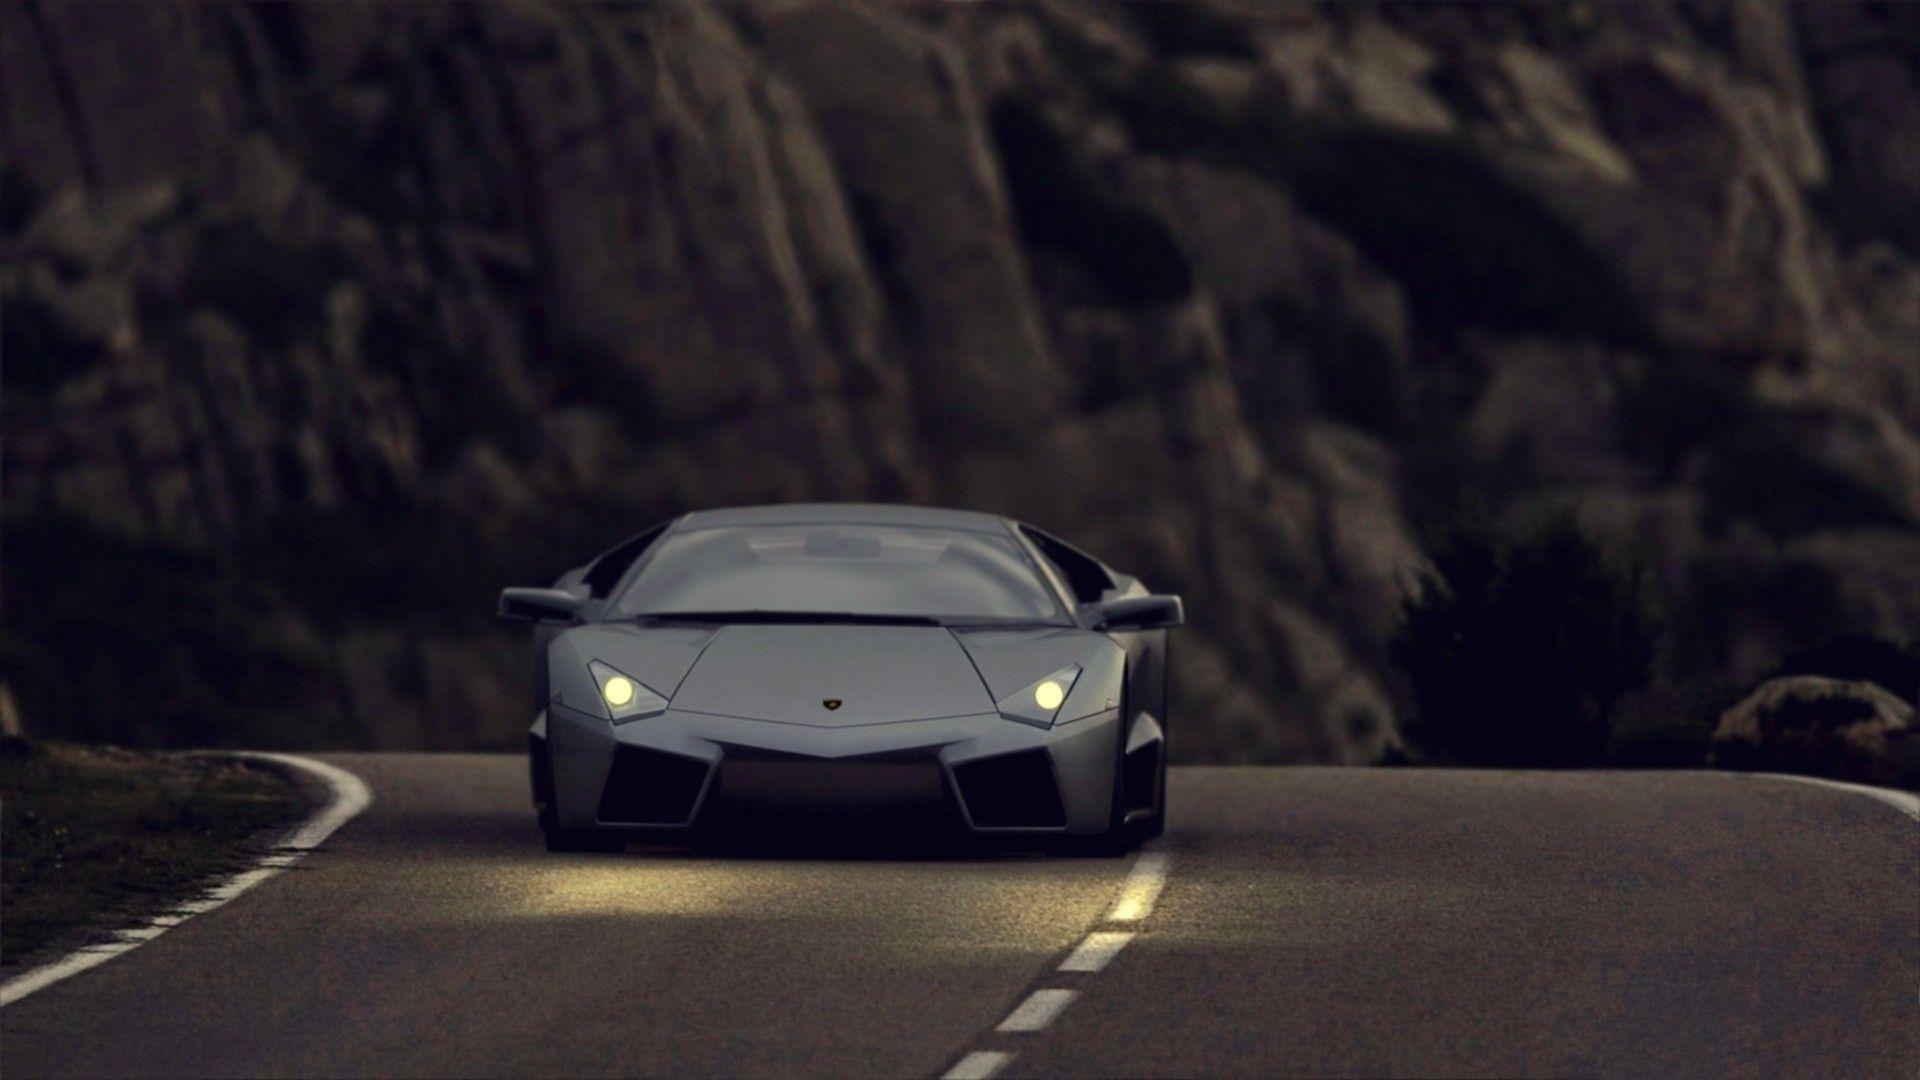 Lamborghini Reventon Black Night Sports Car Wallpaper